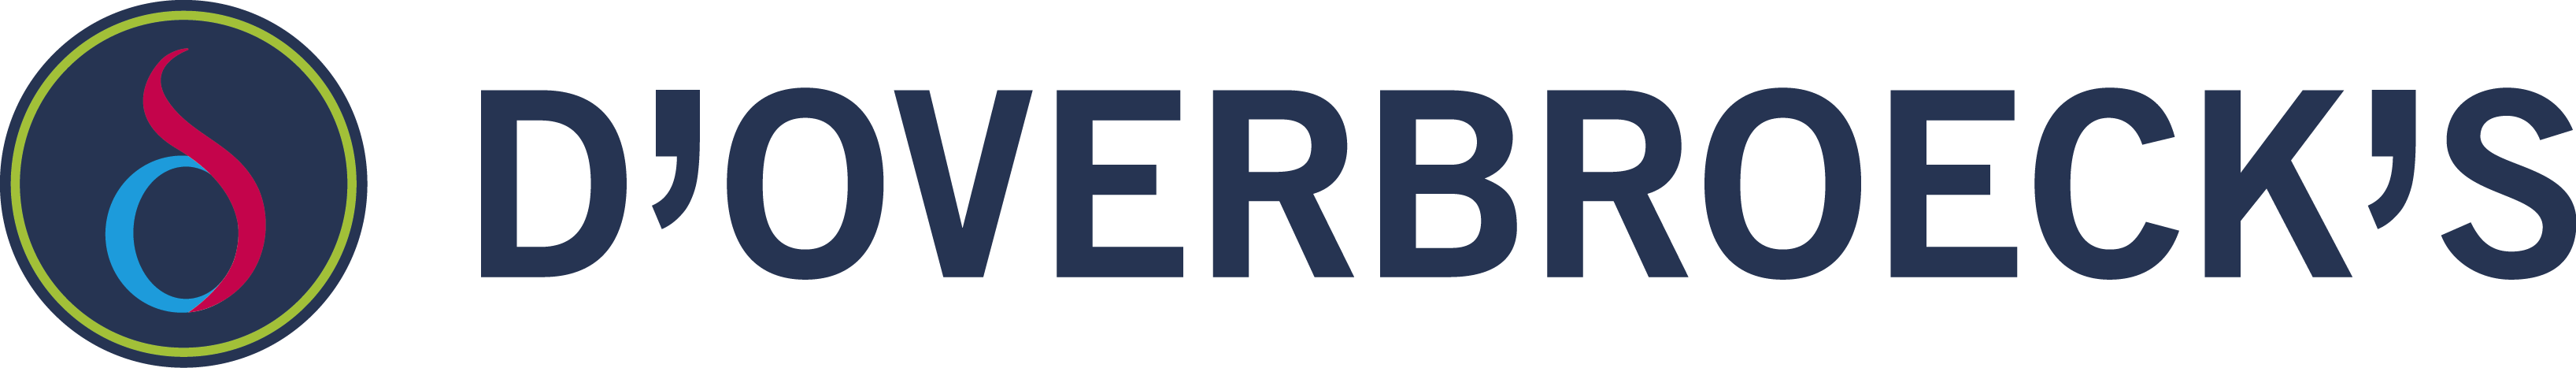 d’Overbroeck’s Logo